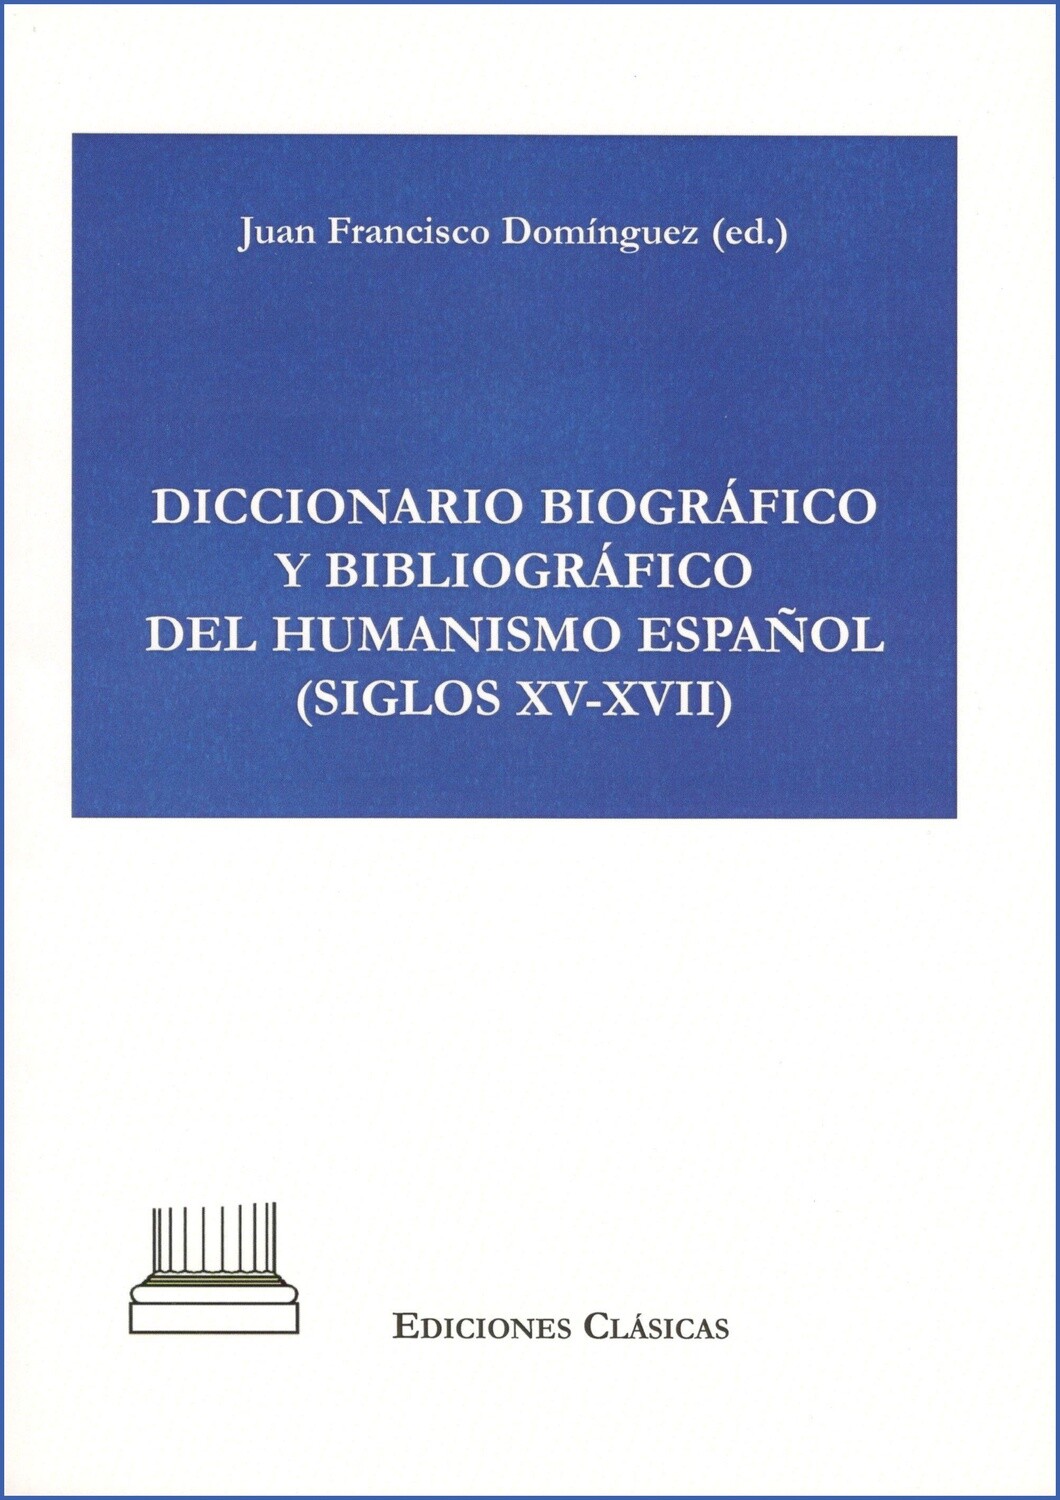 DICCIONARIO BIOGRAFICO Y BIBLIOGRAFICO DEL HUMANISMO ESPAÑOL (SIGLOS XV-XVII)